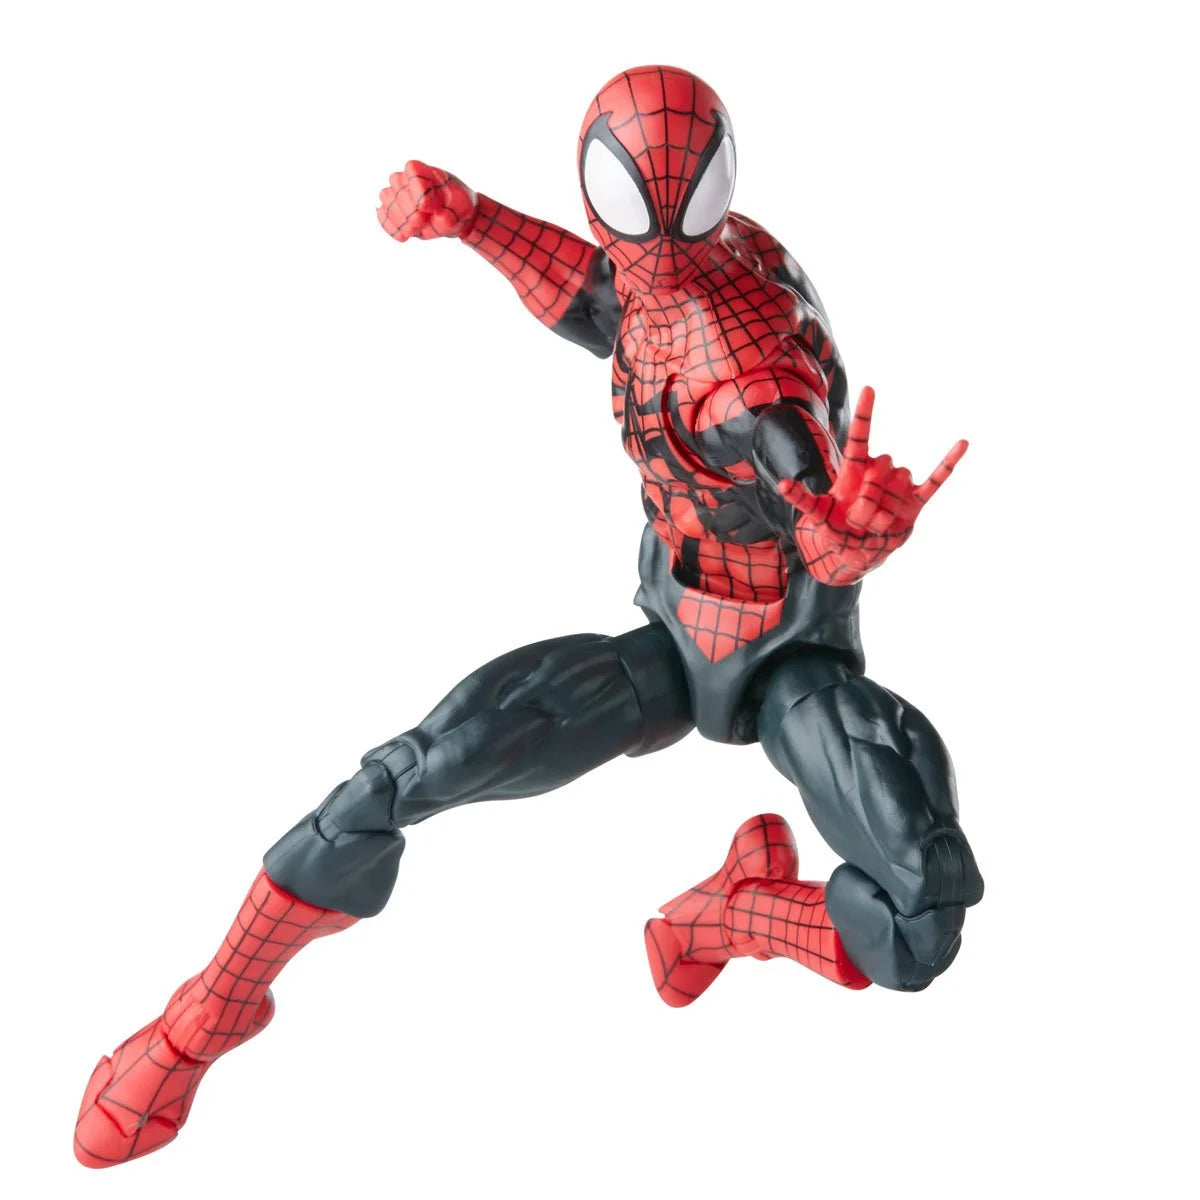 Marvel Legends Spider-Man - Ben Reilly Spider-Man Action Figure Toy